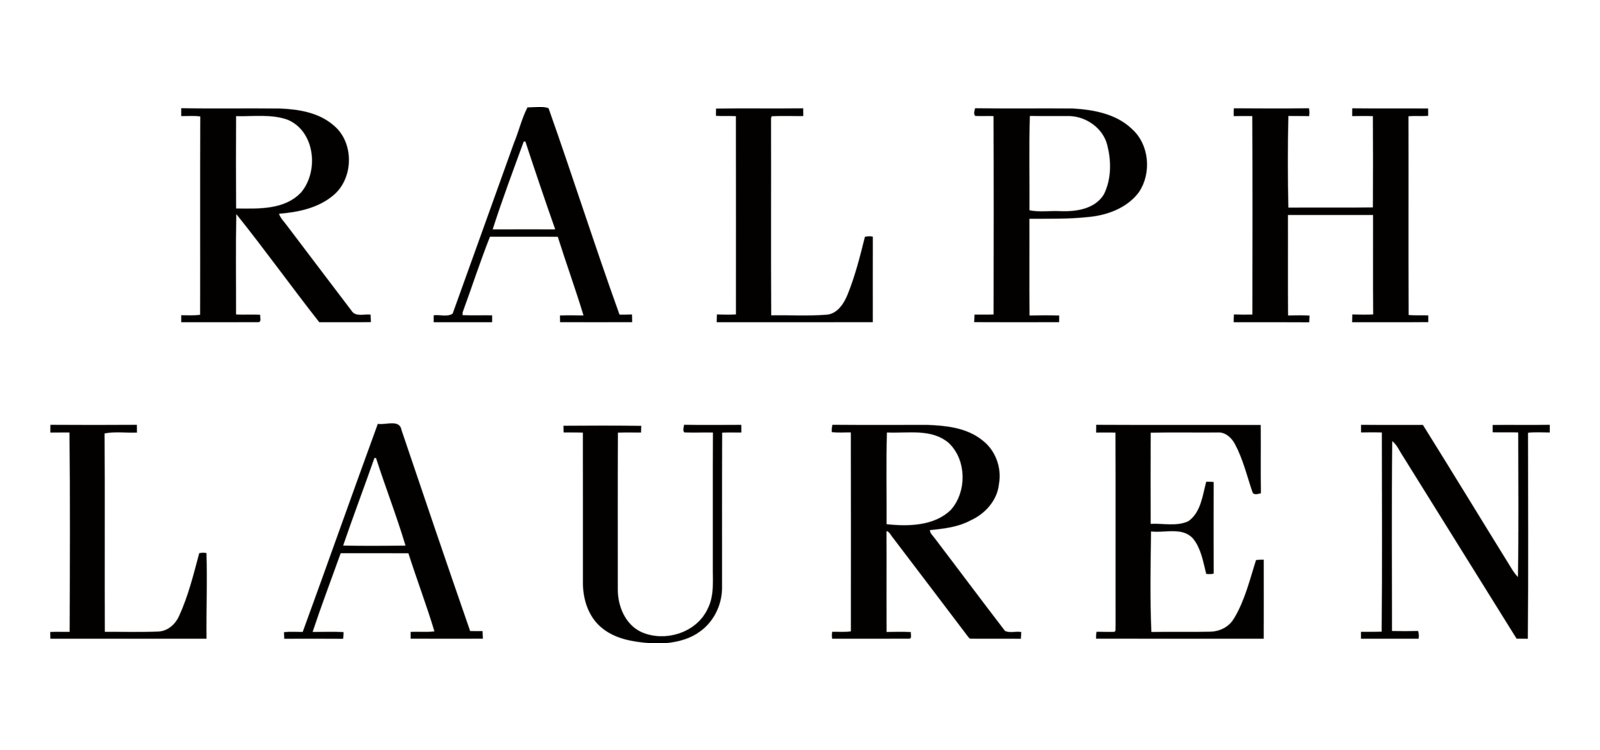 Font-Ralph-Lauren-Logo.jpg